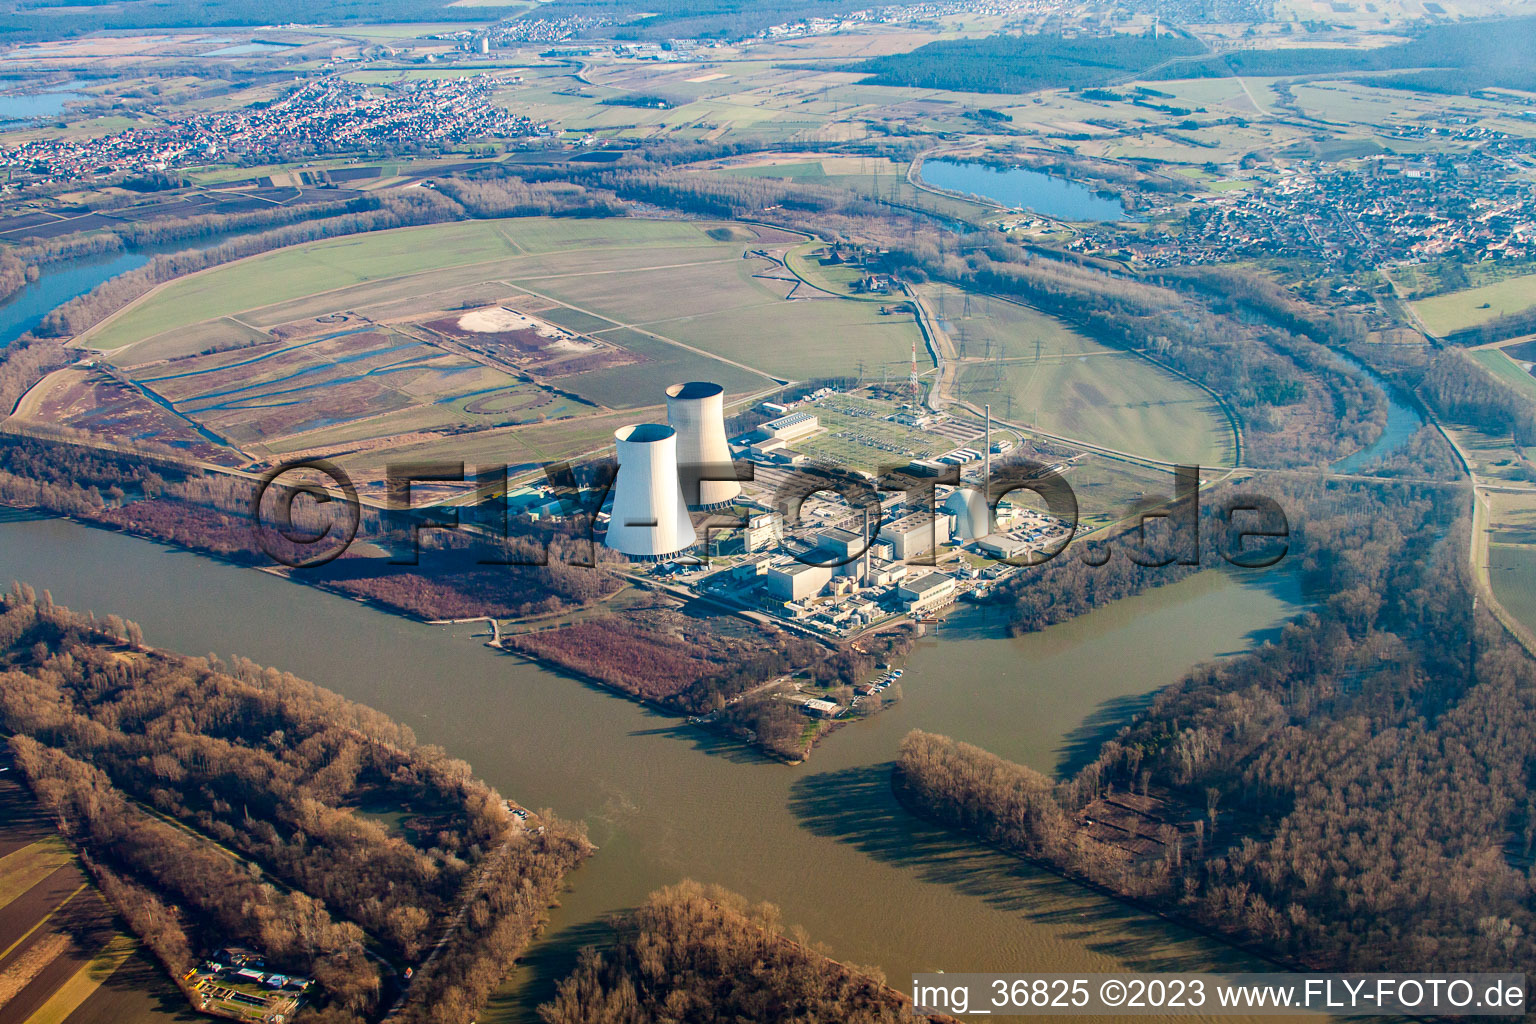 Centrale nucléaire à Philippsburg dans le département Bade-Wurtemberg, Allemagne vue d'en haut